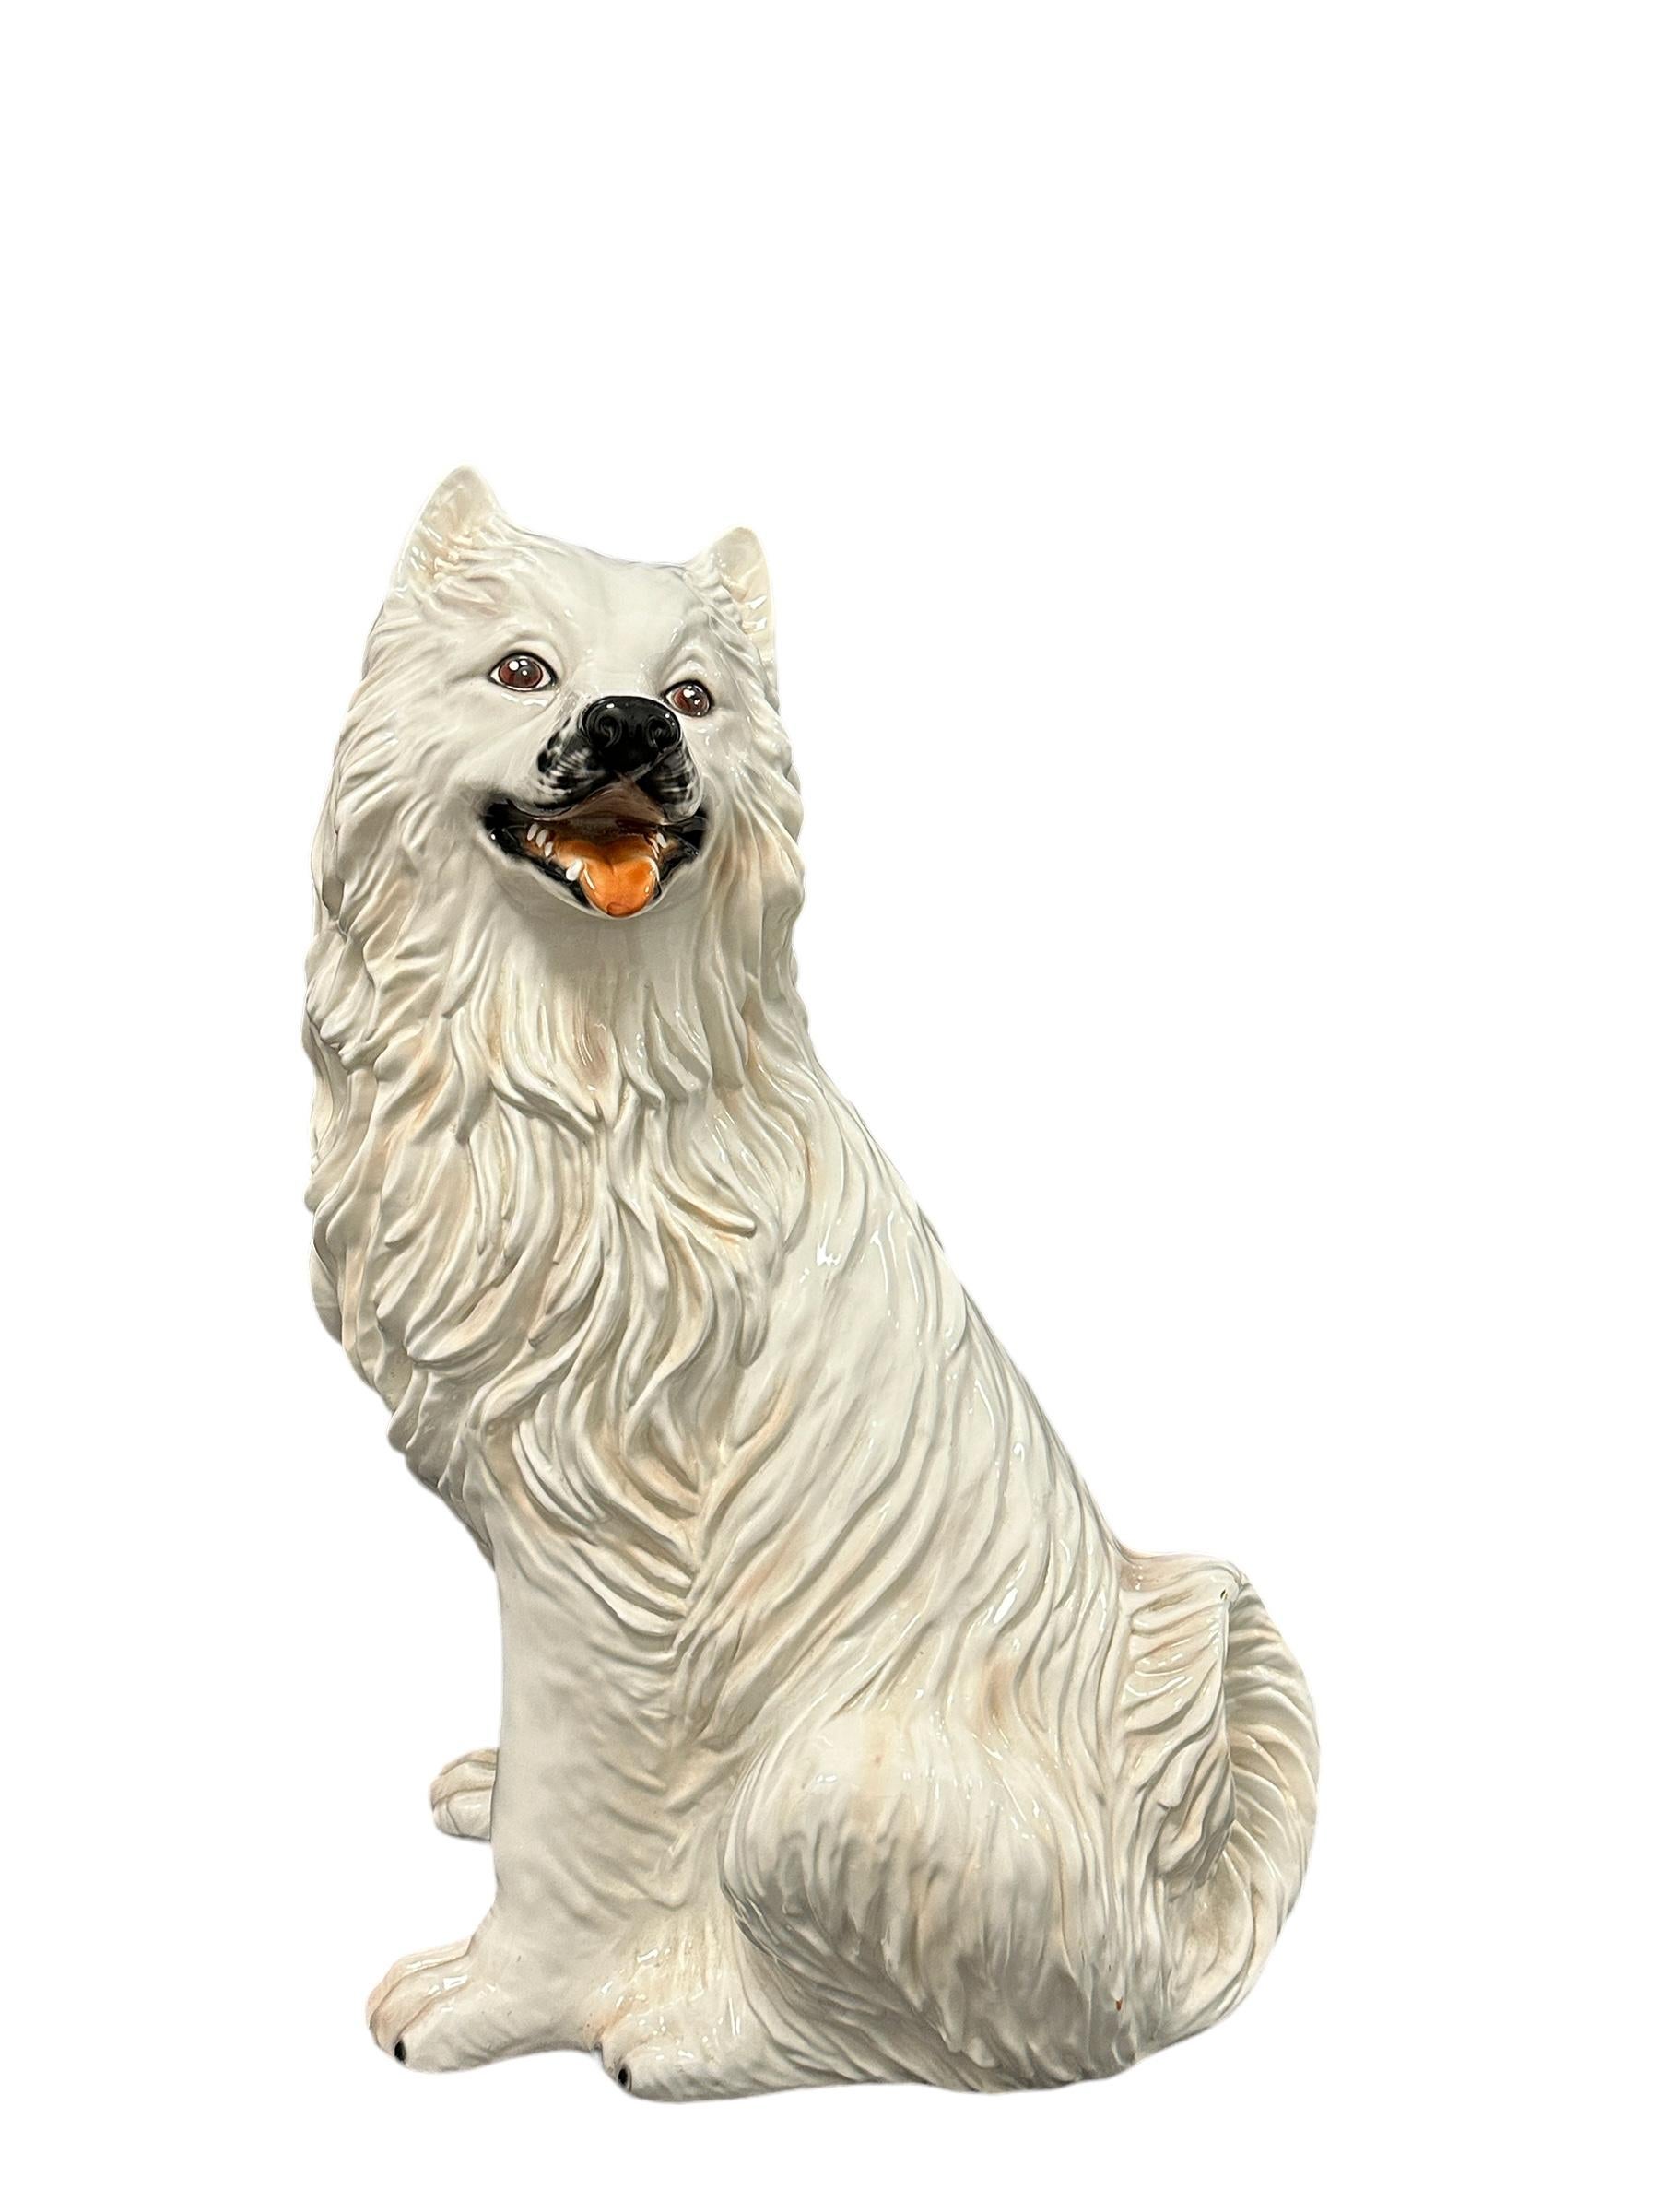 Klassische italienische Majolika-Keramikfigur aus den frühen 1980er Jahren mit weißer Hundestatue. Eine schöne Ergänzung für Ihr Zimmer oder Ihre Eingangshalle. Hergestellt aus Majolika-Keramik, handbemalt. Mit kleinem Chip am Fell wie auf dem Bild